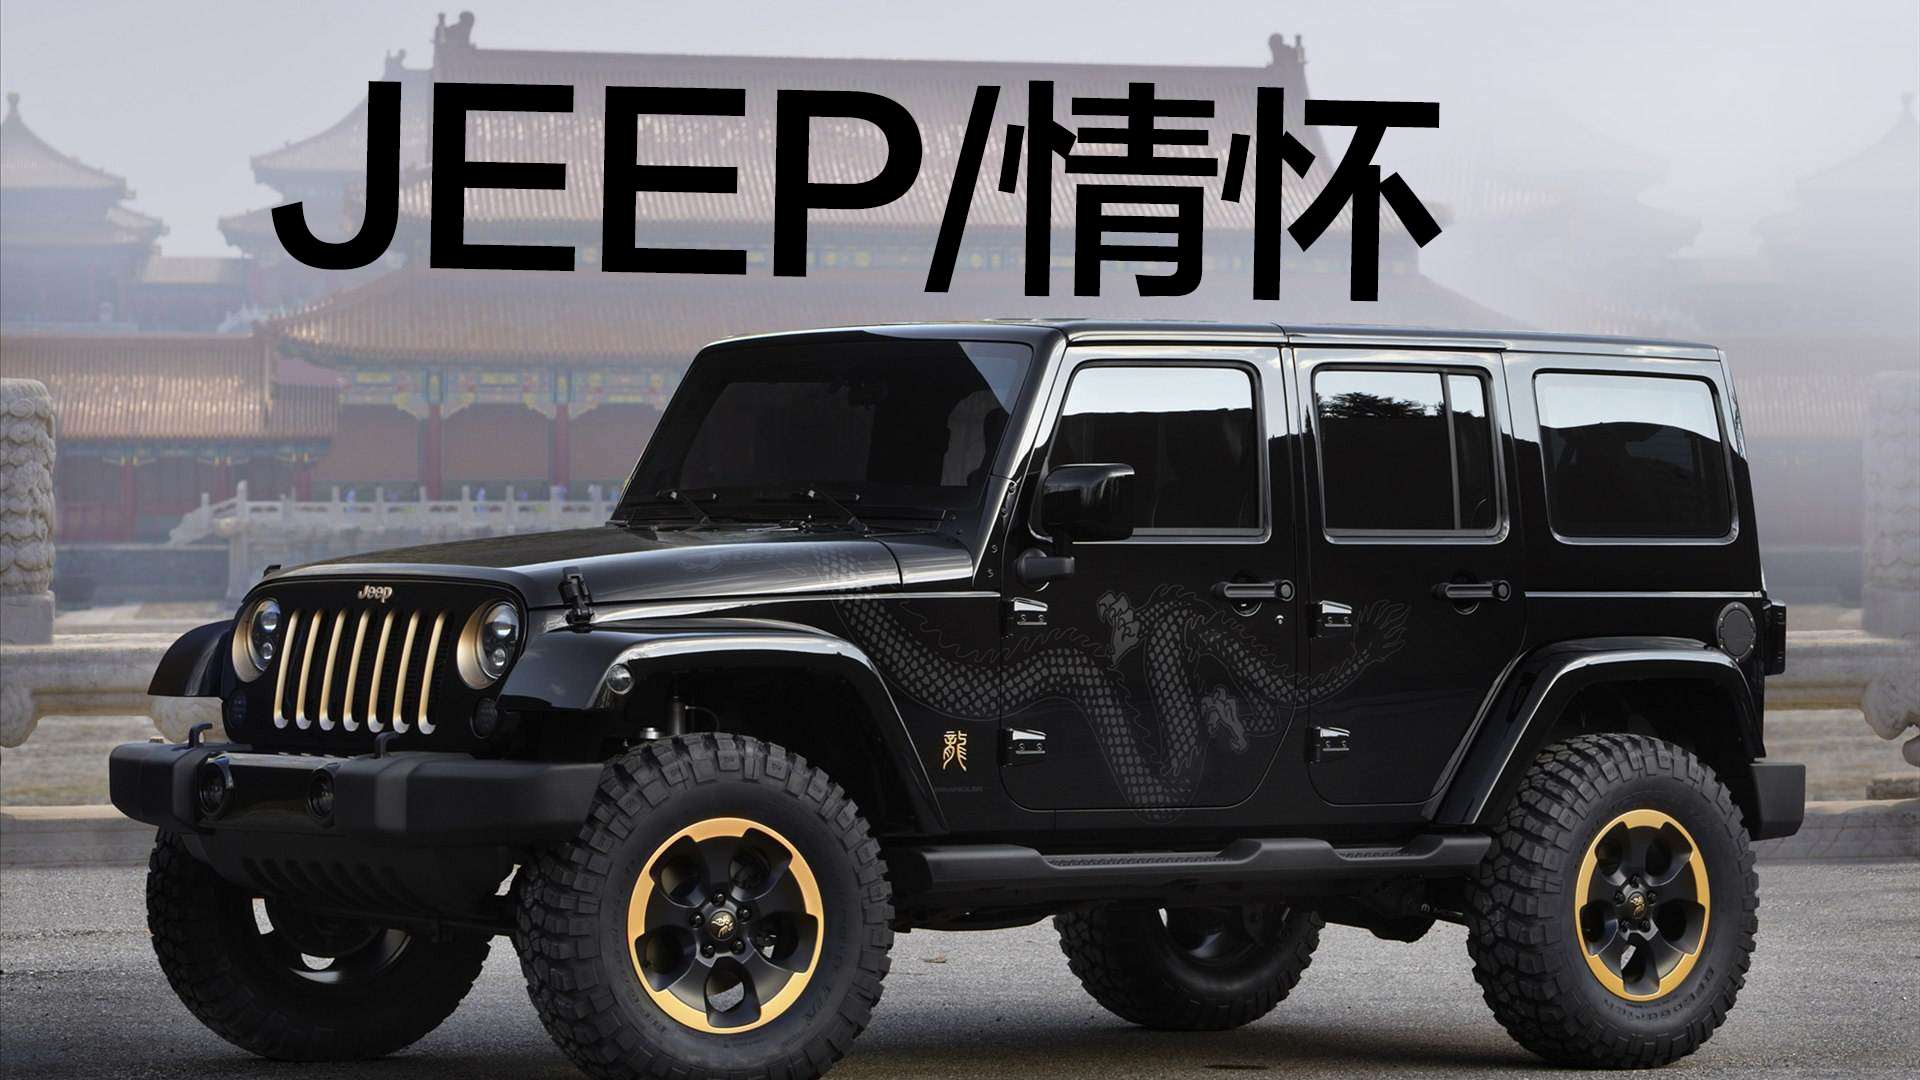 豆车一分钟:jeep家族最有情怀的车型.